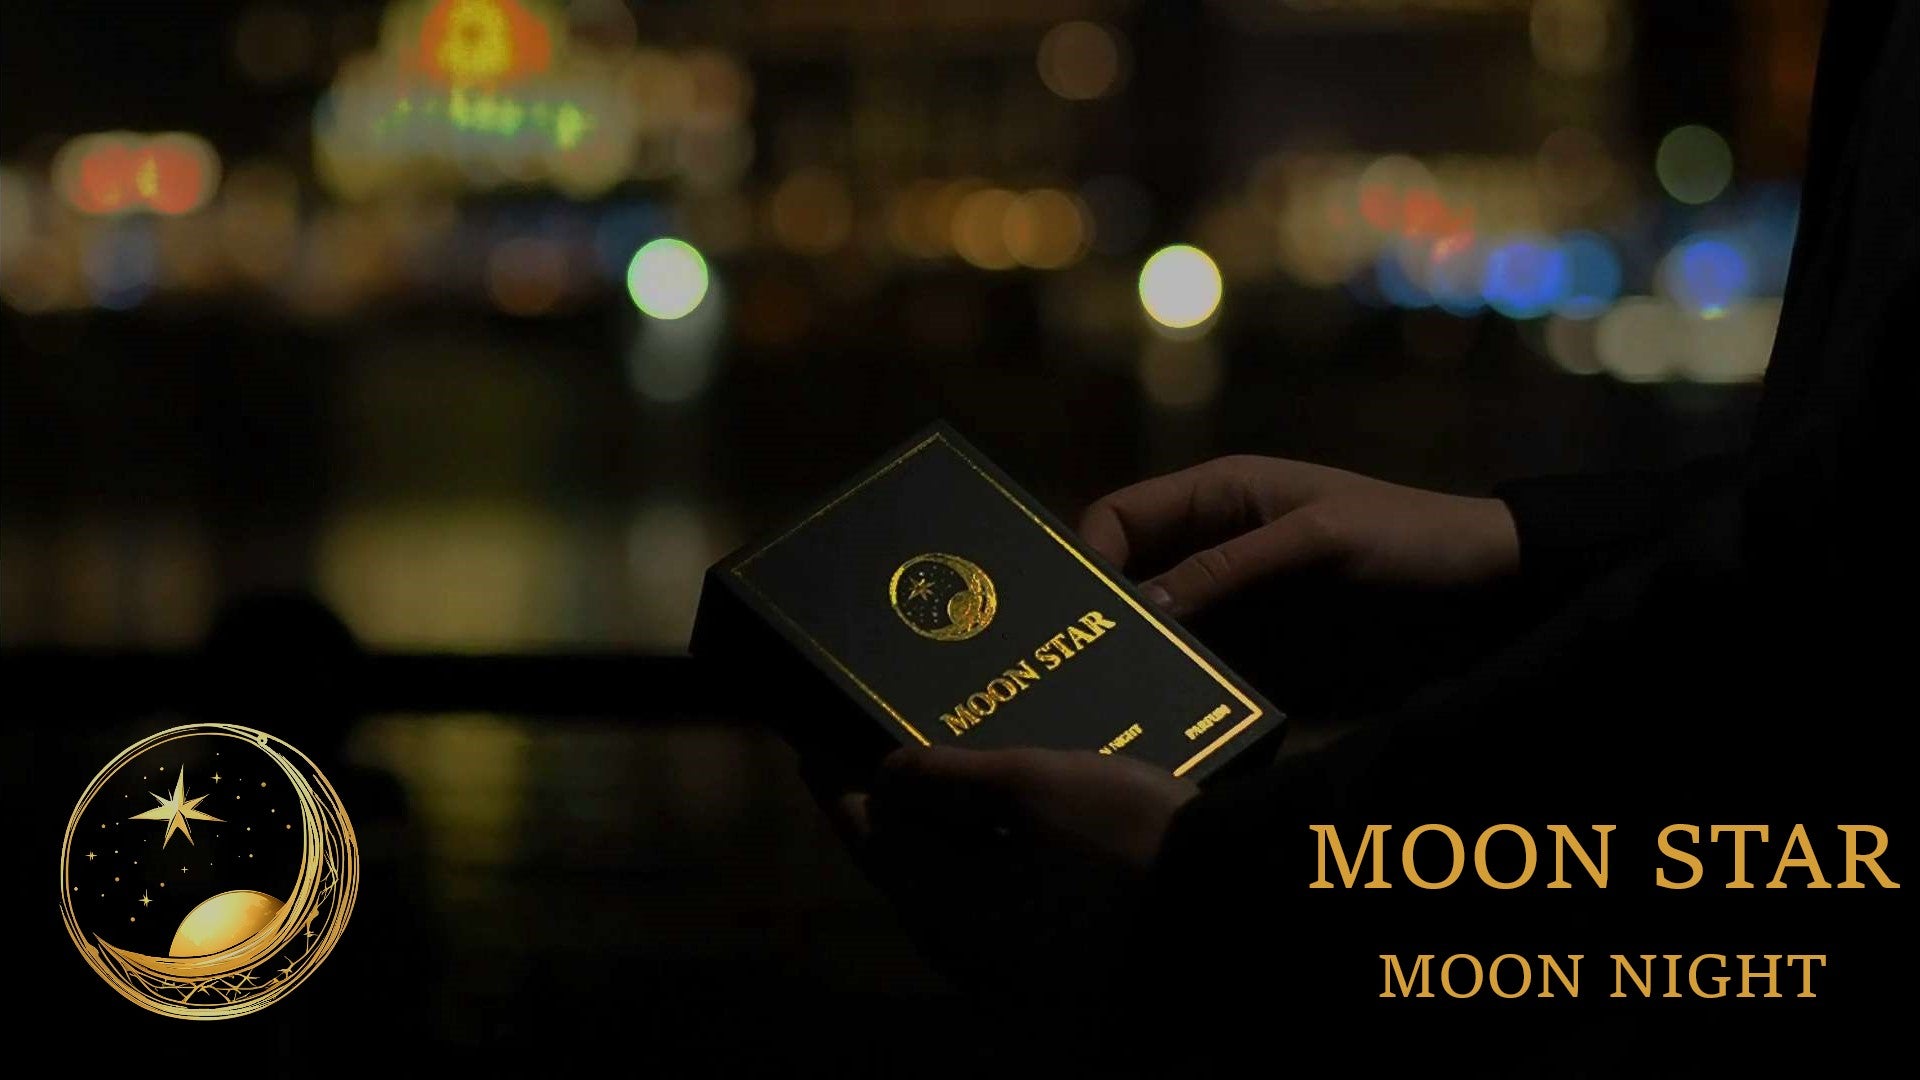 Video laden: Entdecke die Eleganz von Moon Star! 🌙✨ Unser Parfum, eingefangen in einer exquisiten Flasche und Box. Tauche ein in die Magie der Sinne.  Erhältlich auf: https://moon-star.shop/  #moonstar #duftzauber #eleganz #luxusduft